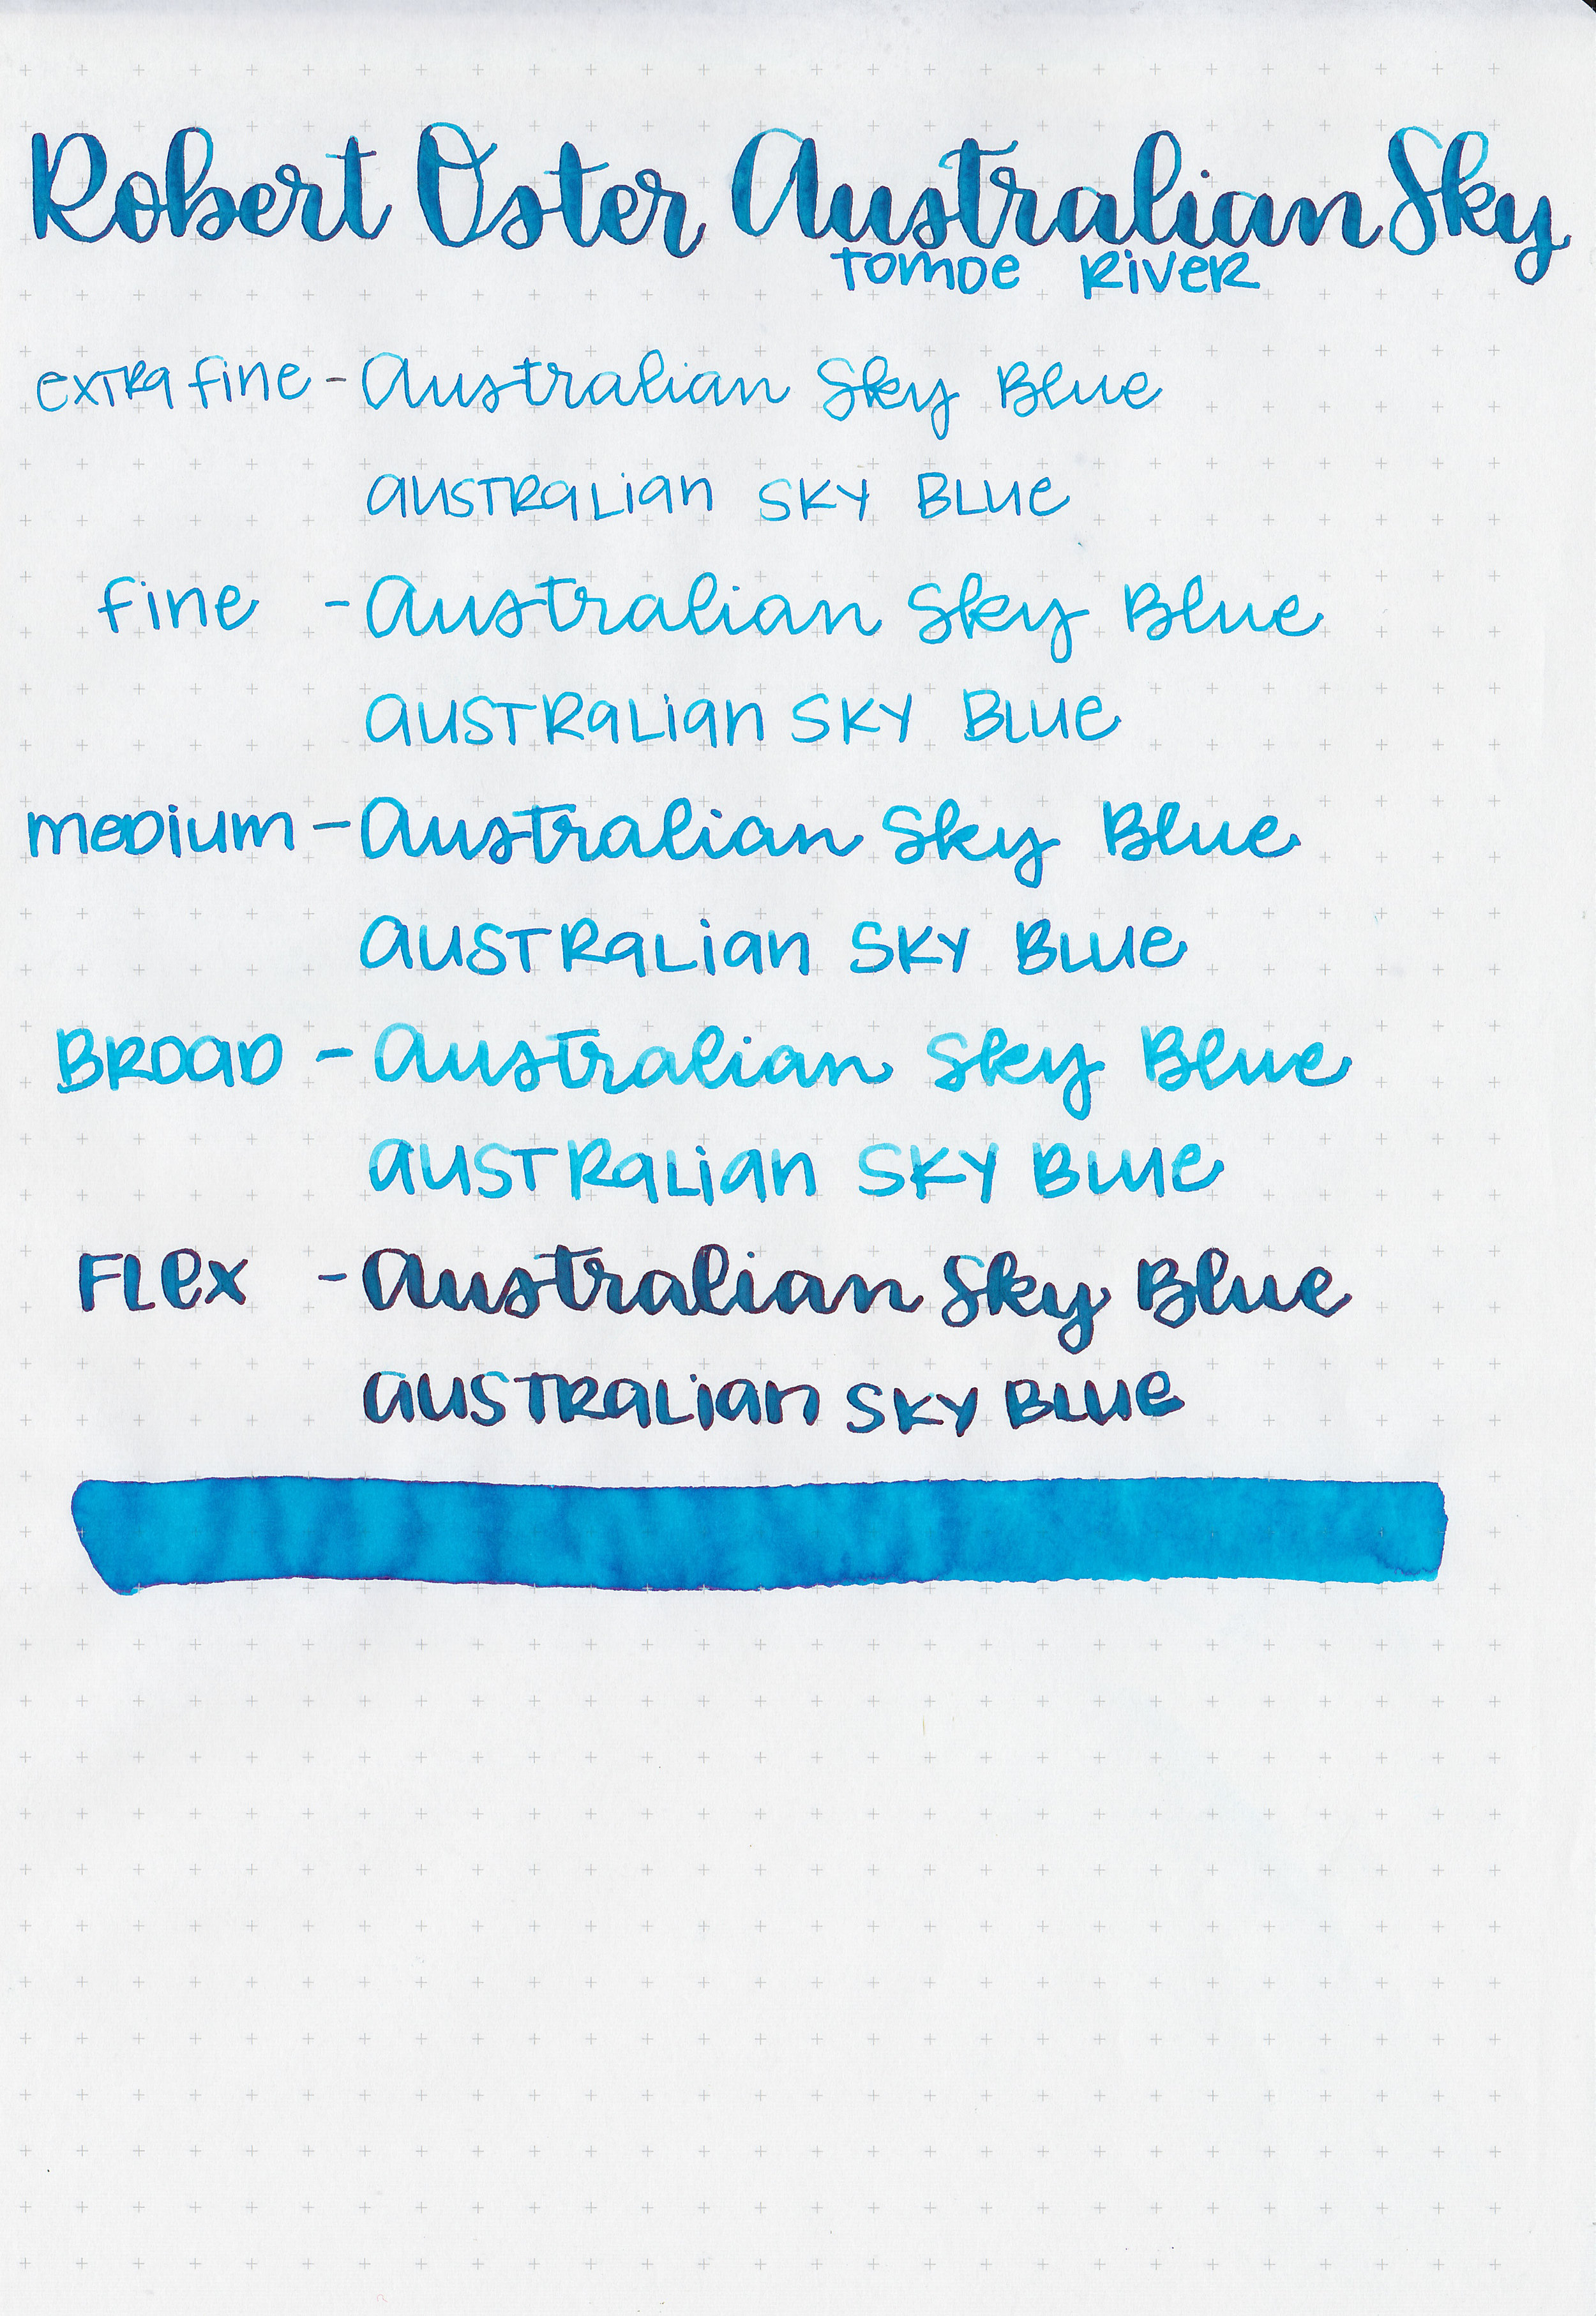 ro-australian-sky-blue-19.jpg